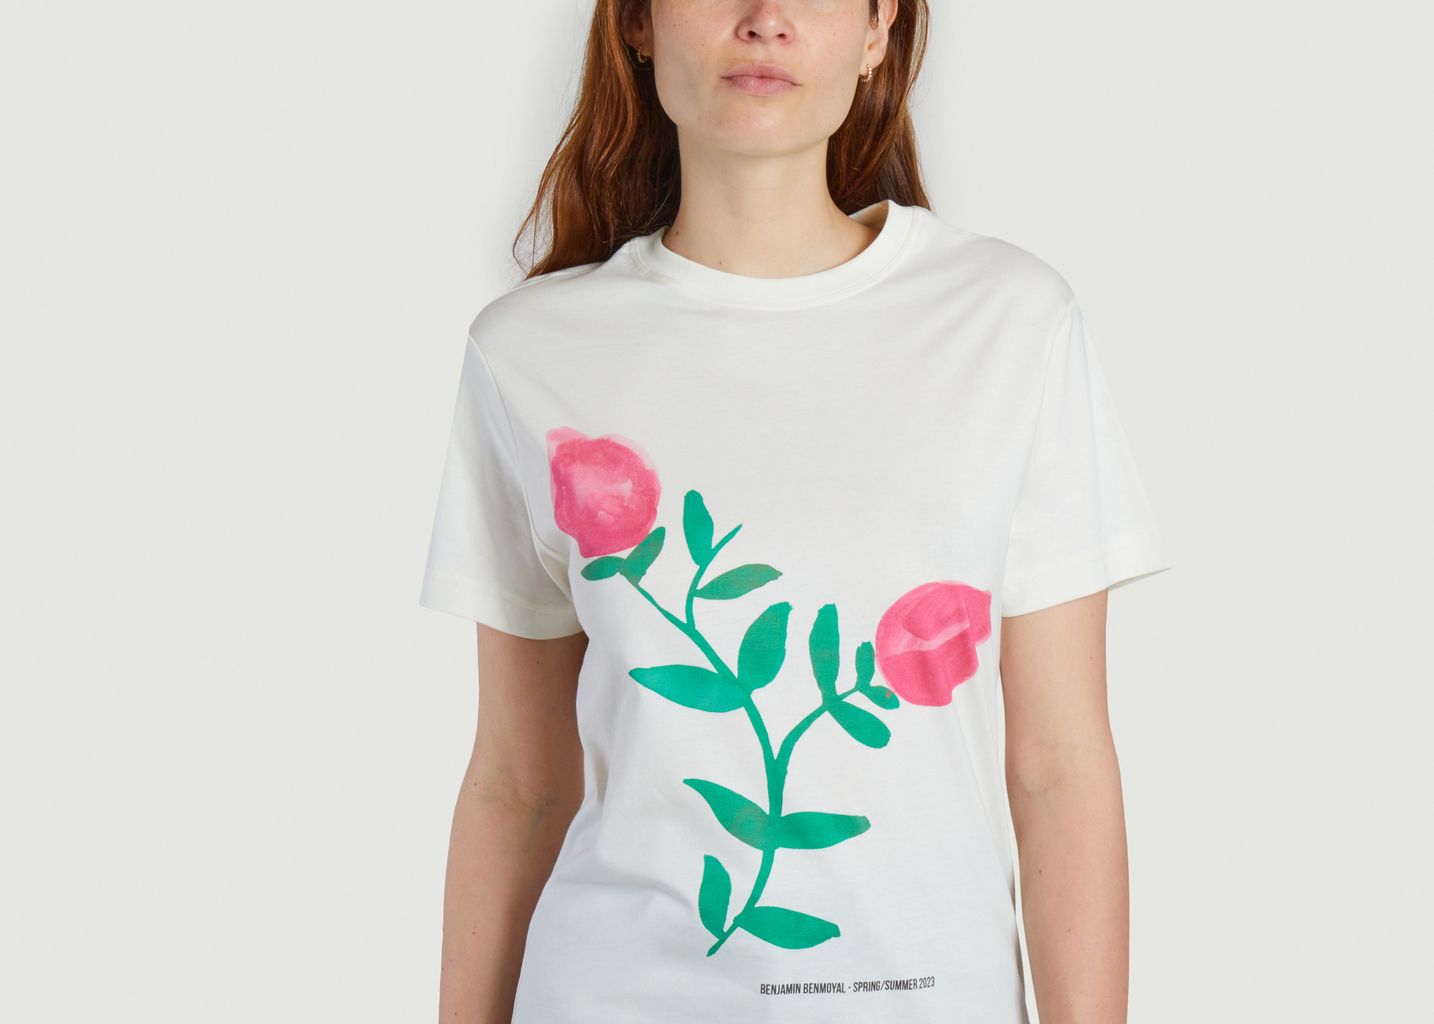 Bedrucktes T-Shirt aus Baumwolle  - benjamin benmoyal